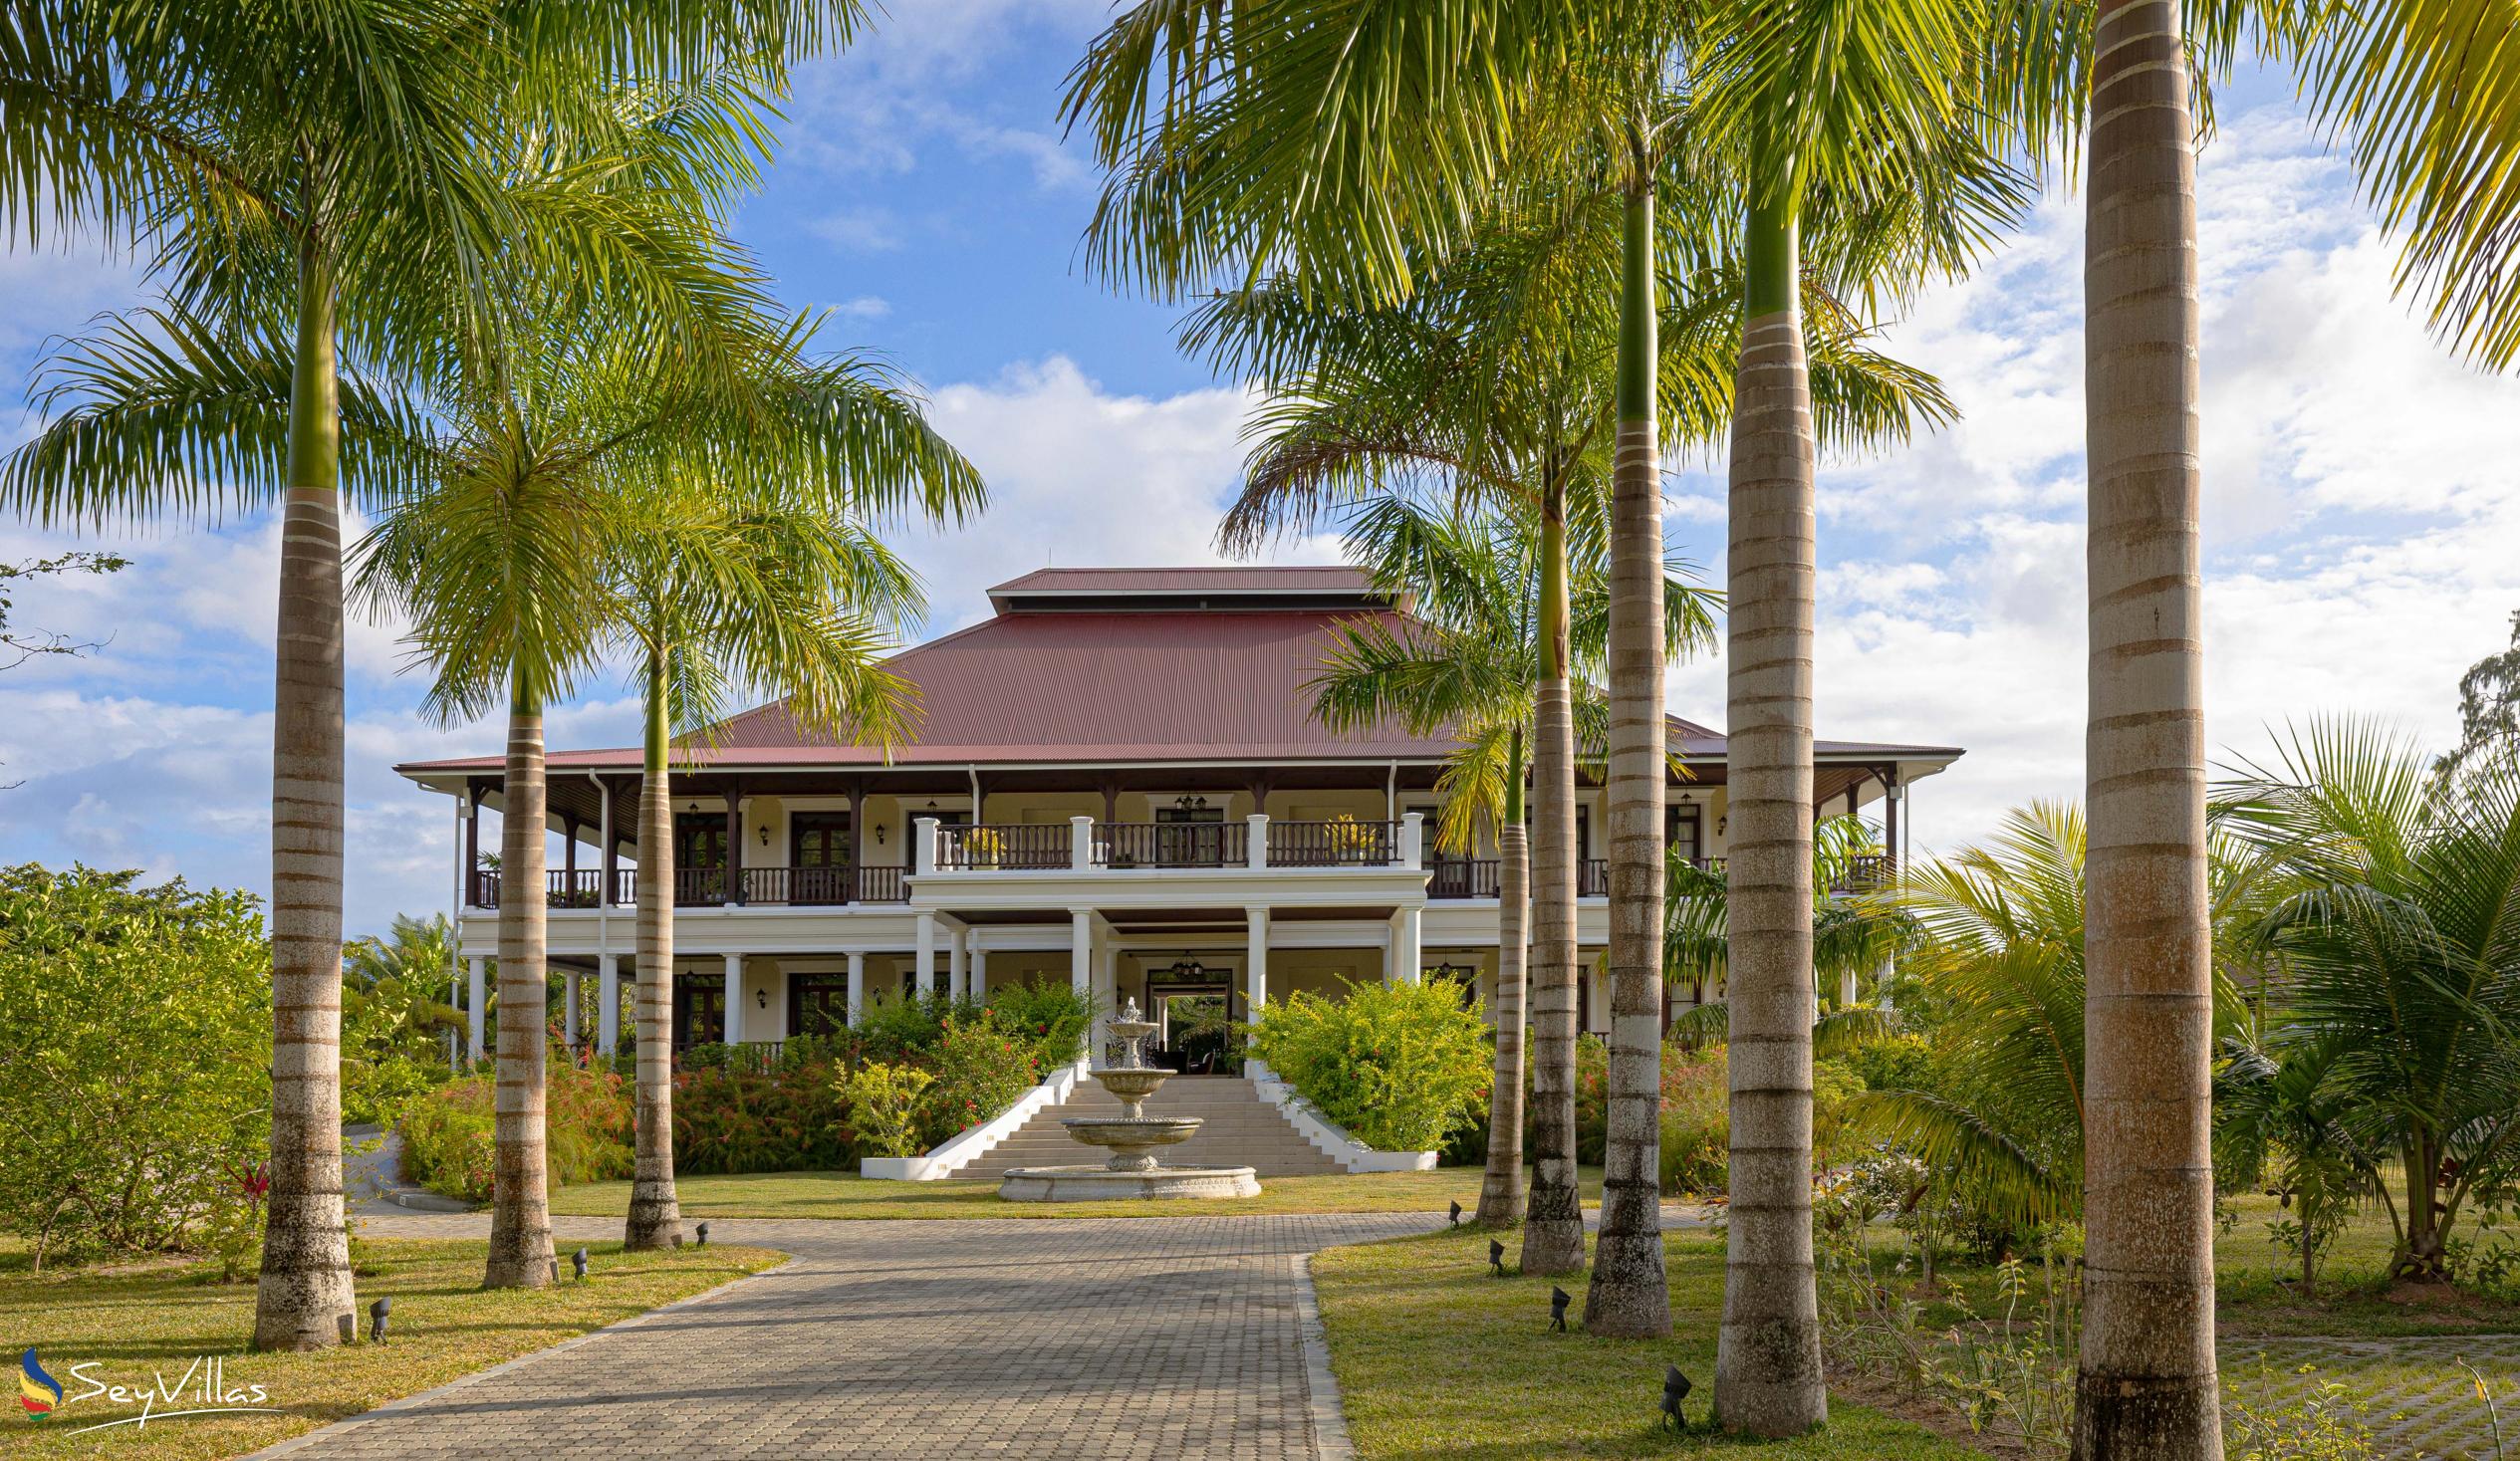 Photo 1: La Cigale Estate - Outdoor area - Praslin (Seychelles)